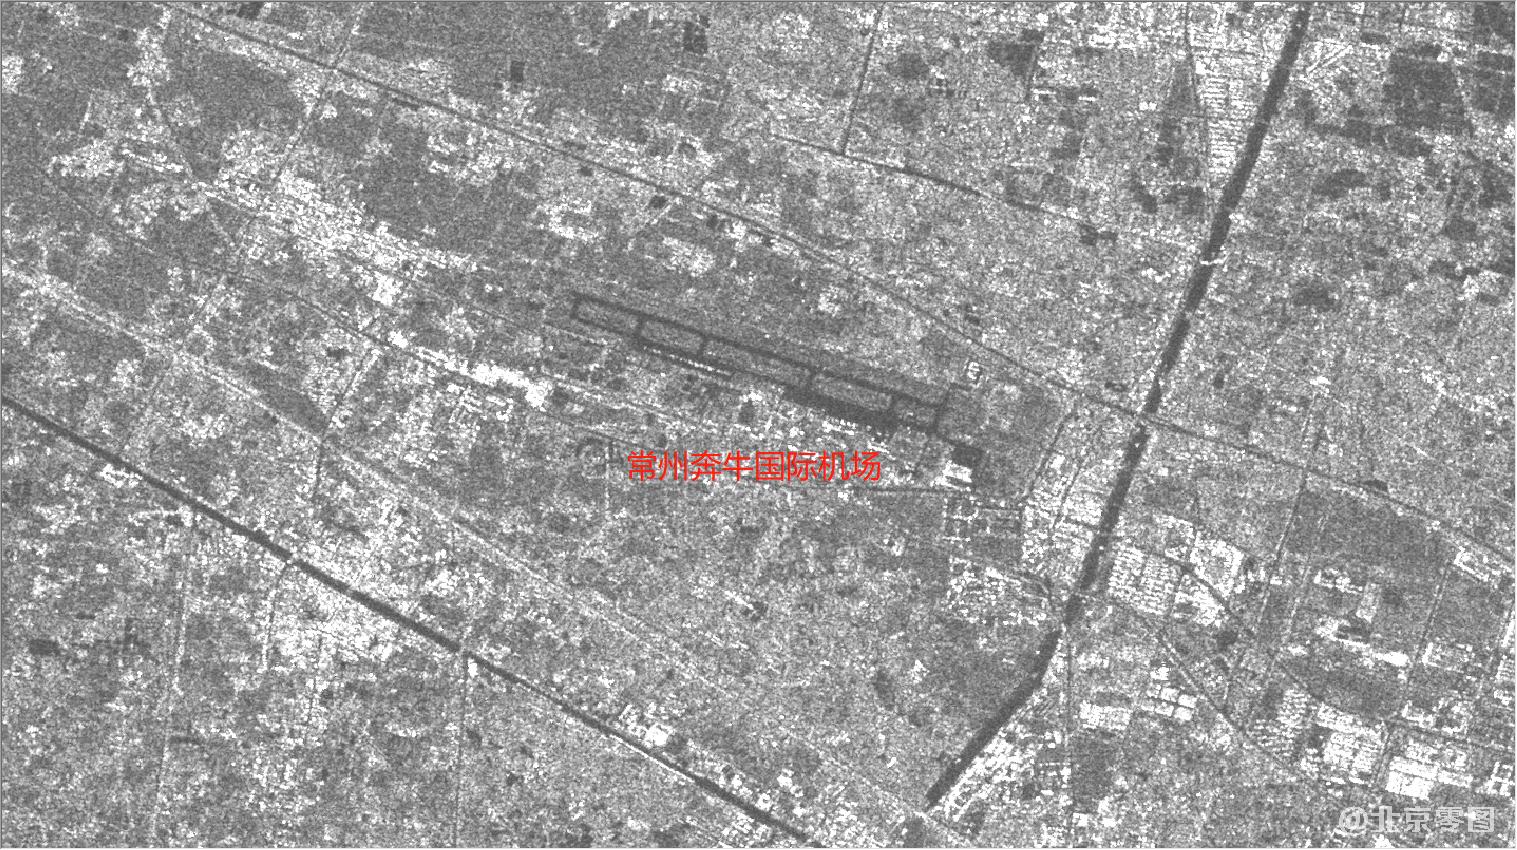 常州市奔牛国际机场2021年4月30日雷达影像图